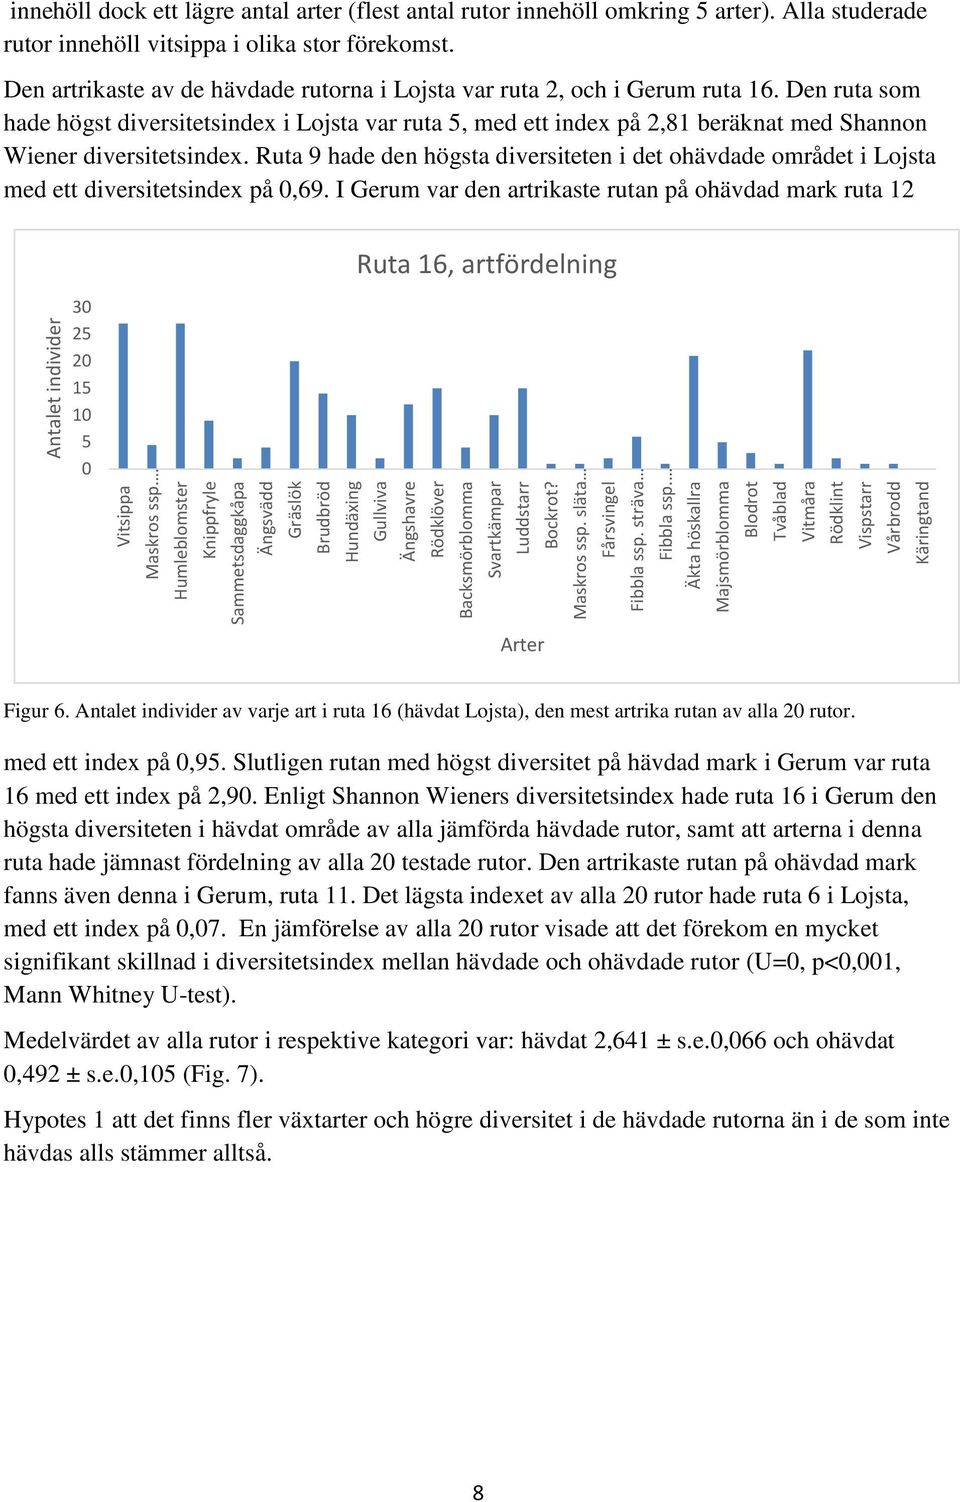 Den ruta som hade högst diversitetsindex i Lojsta var ruta 5, med ett index på 2,81 beräknat med Shannon Wiener diversitetsindex.